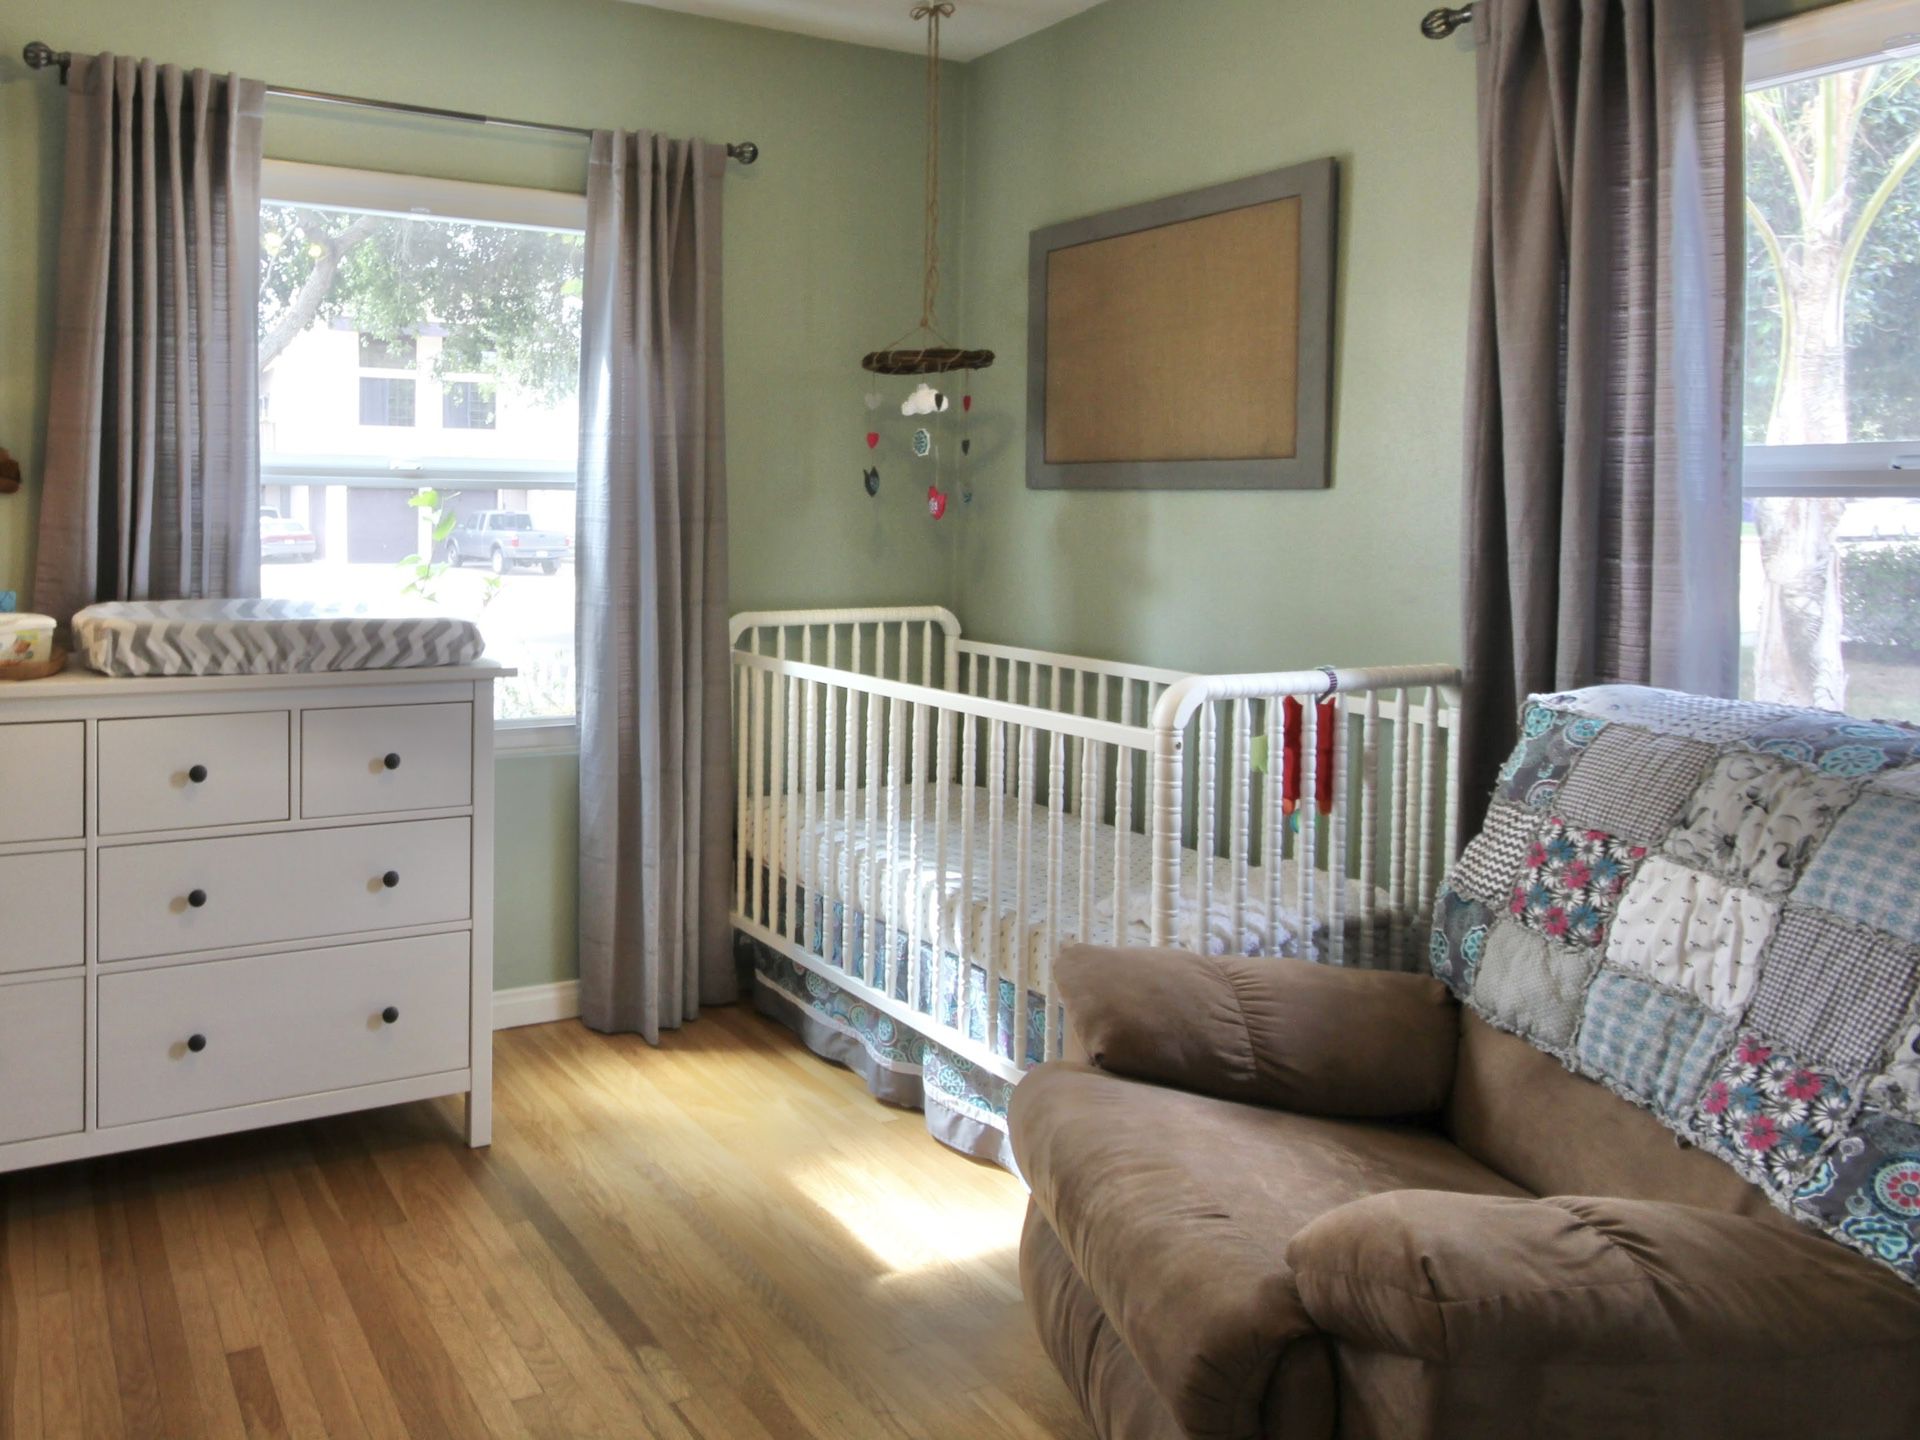 White Wood Baby Crib